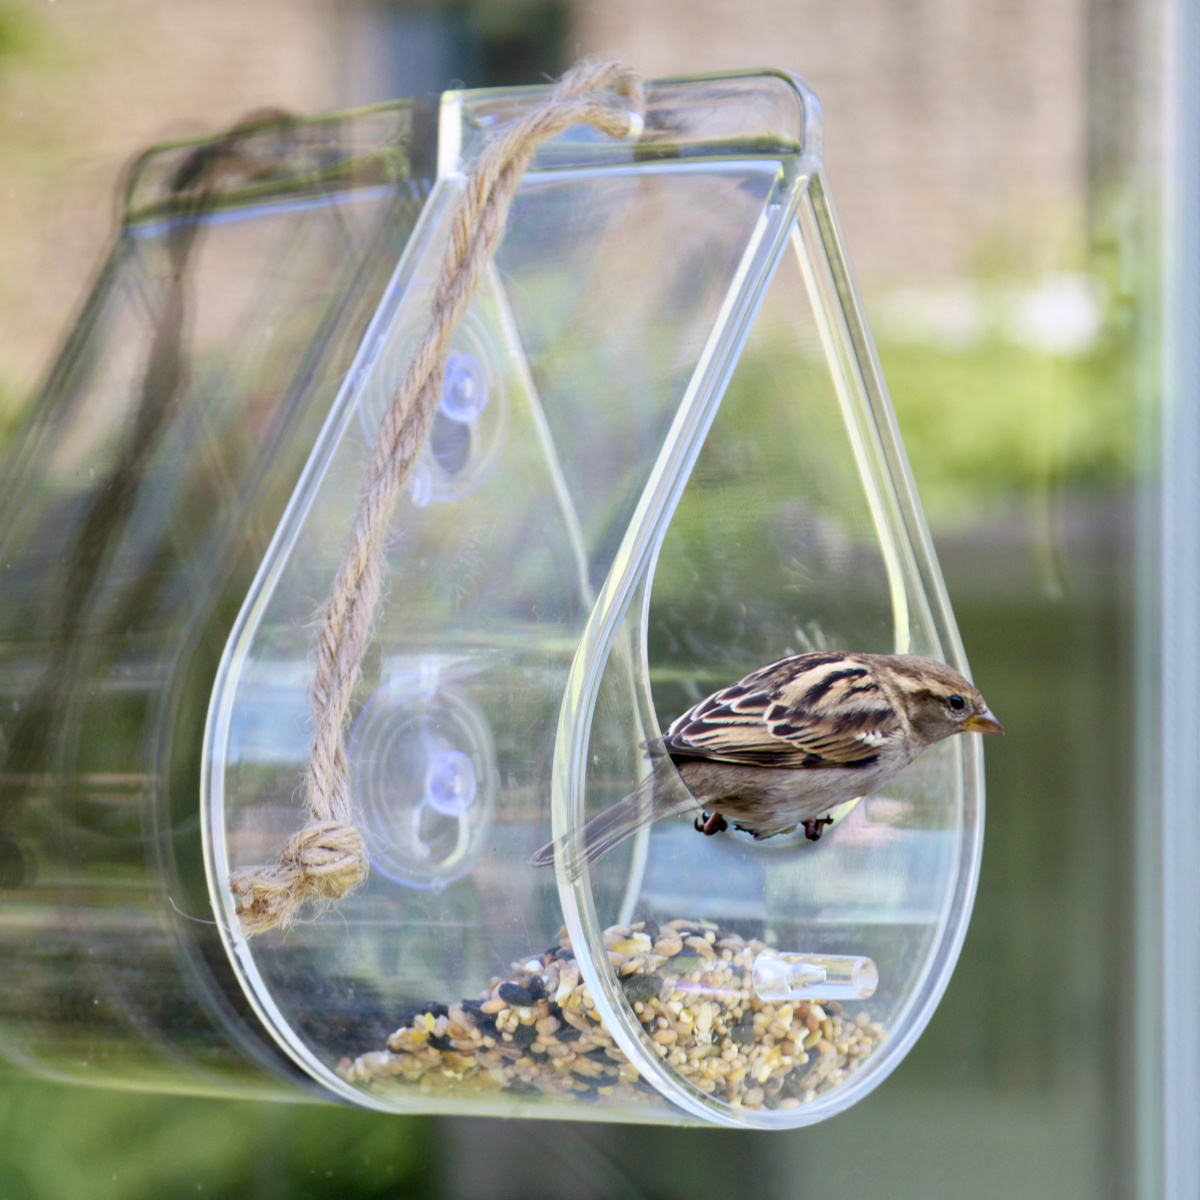 Wildlife World bird feeder for window and suspension